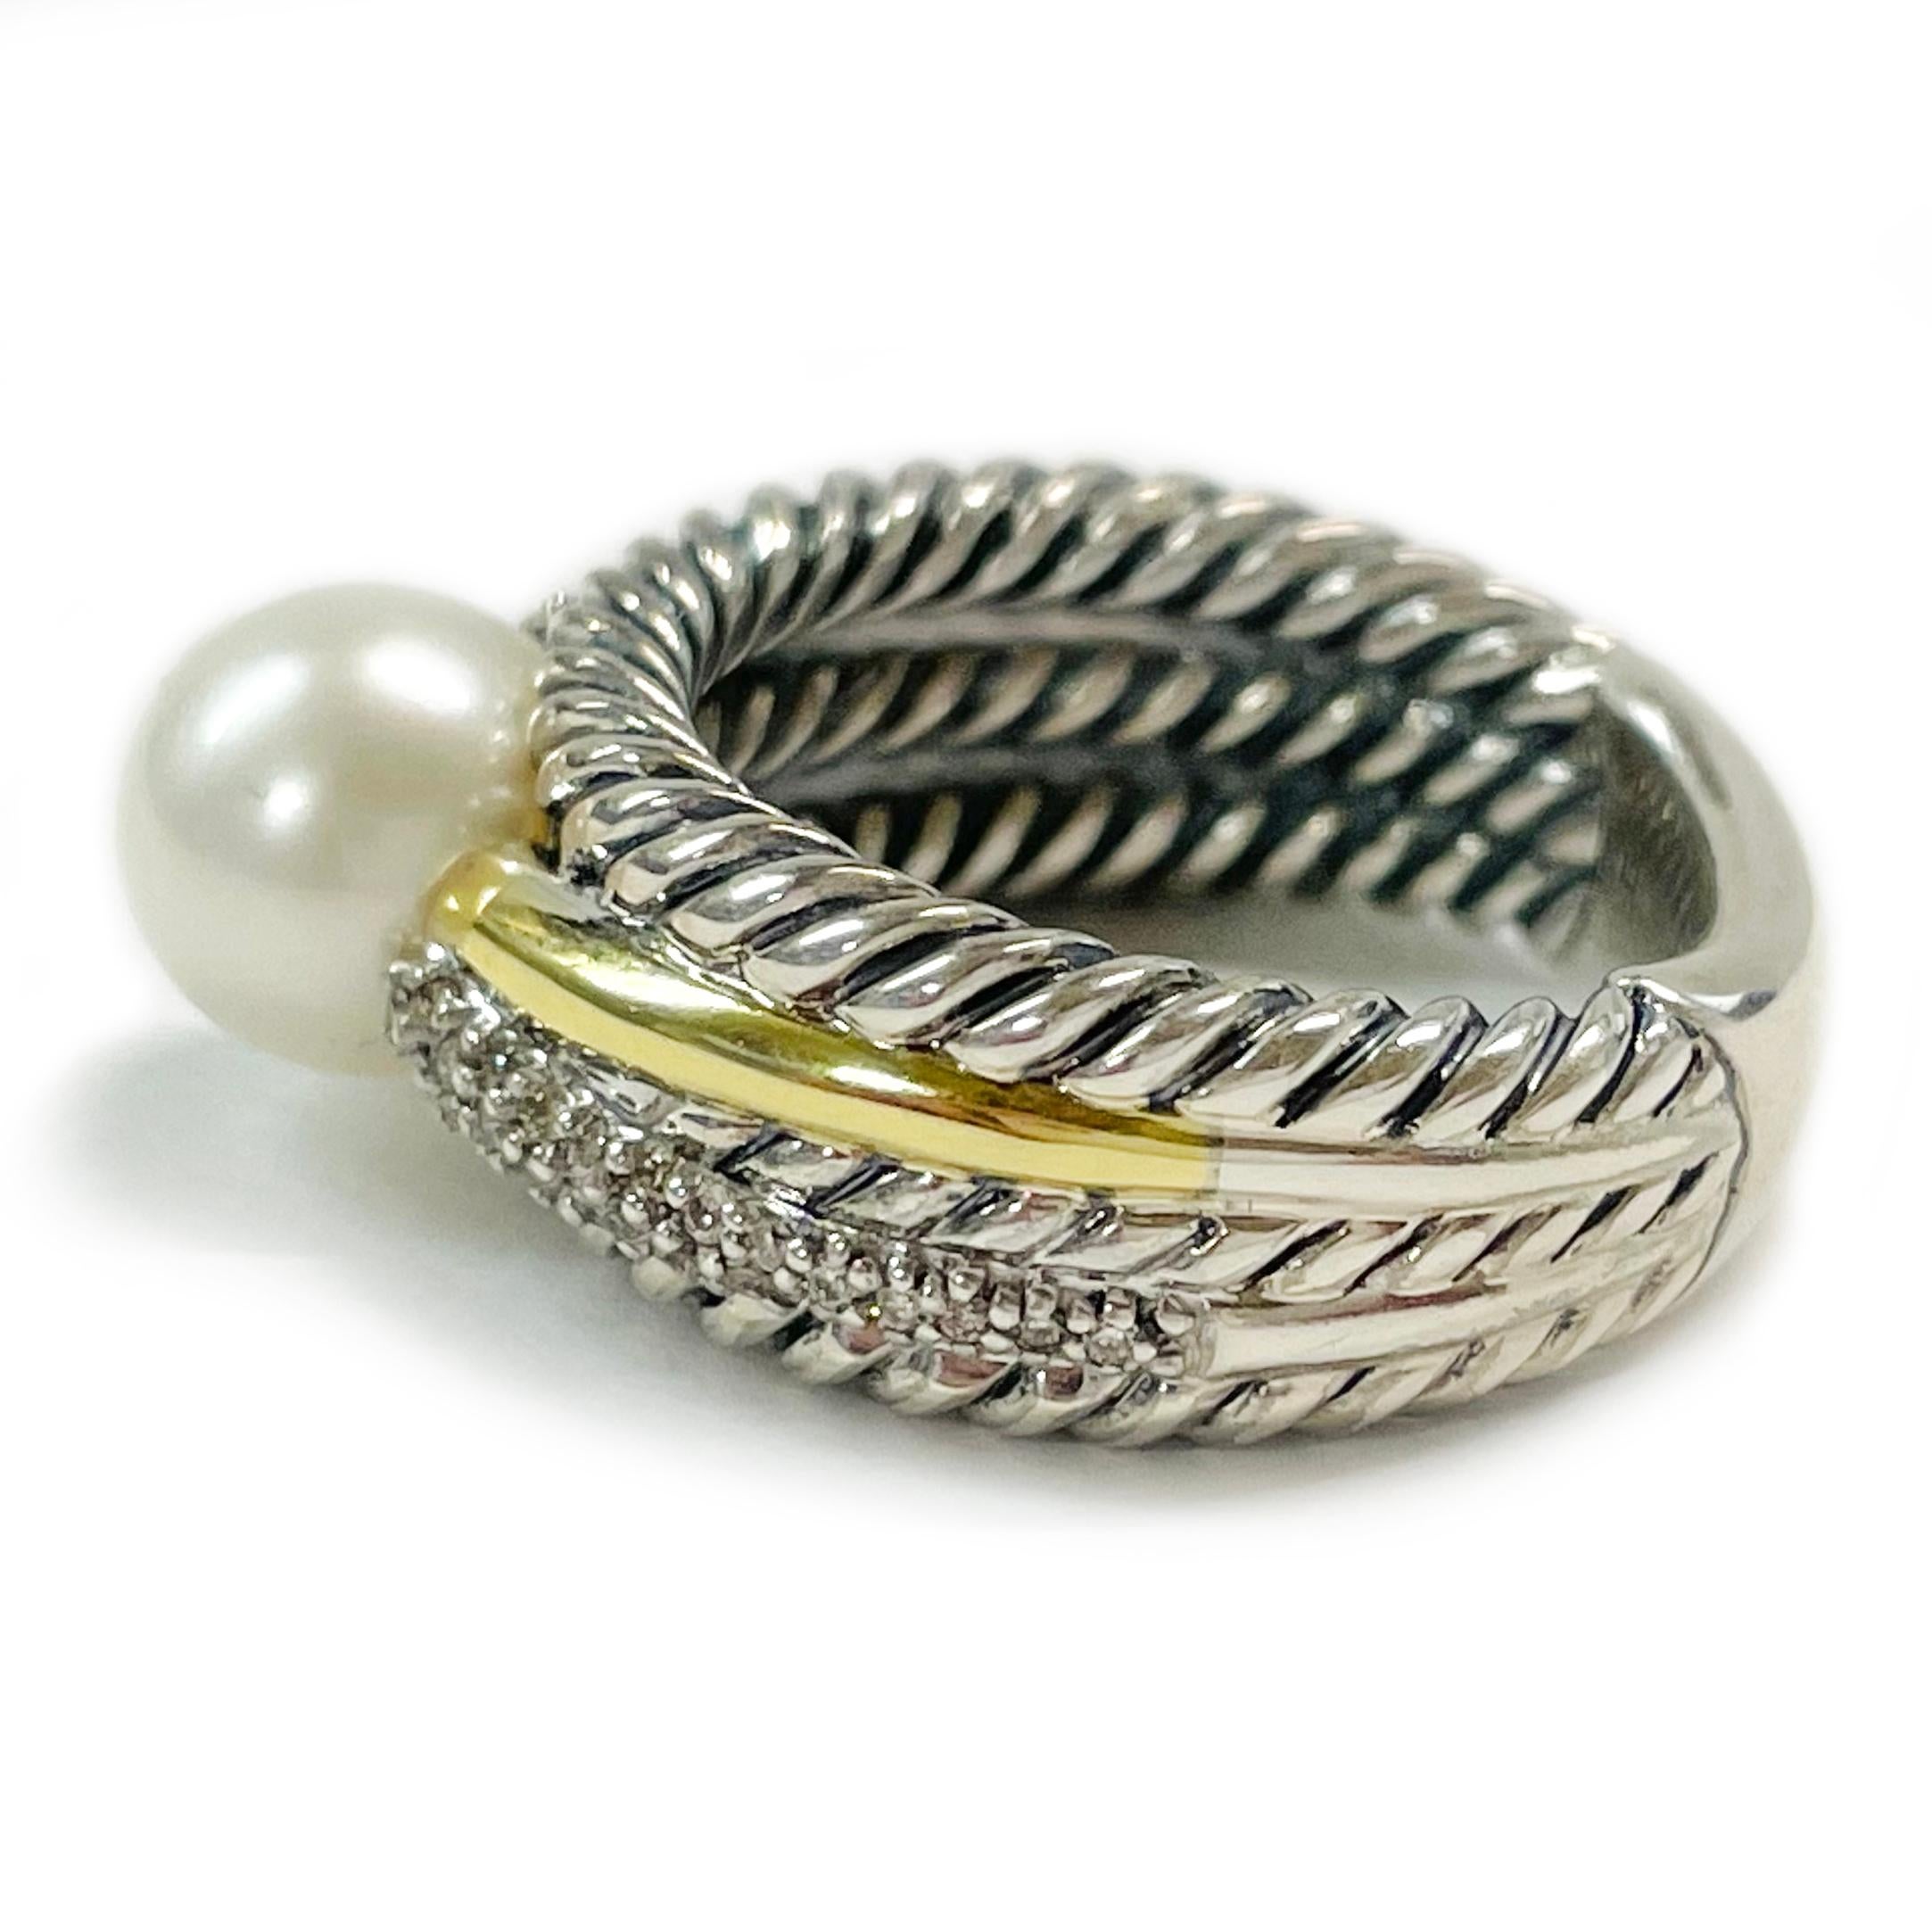 David Yurman Zweifarbiger Perlen-Diamant-Ring. Der schöne Ring verfügt über die klassische Yurman Kabel-Design mit einem glatten glänzenden 18 Karat Gelbgold Element, vierunddreißig Nahkampf Diamanten und in der Mitte des Rings ist eine schöne 7mm